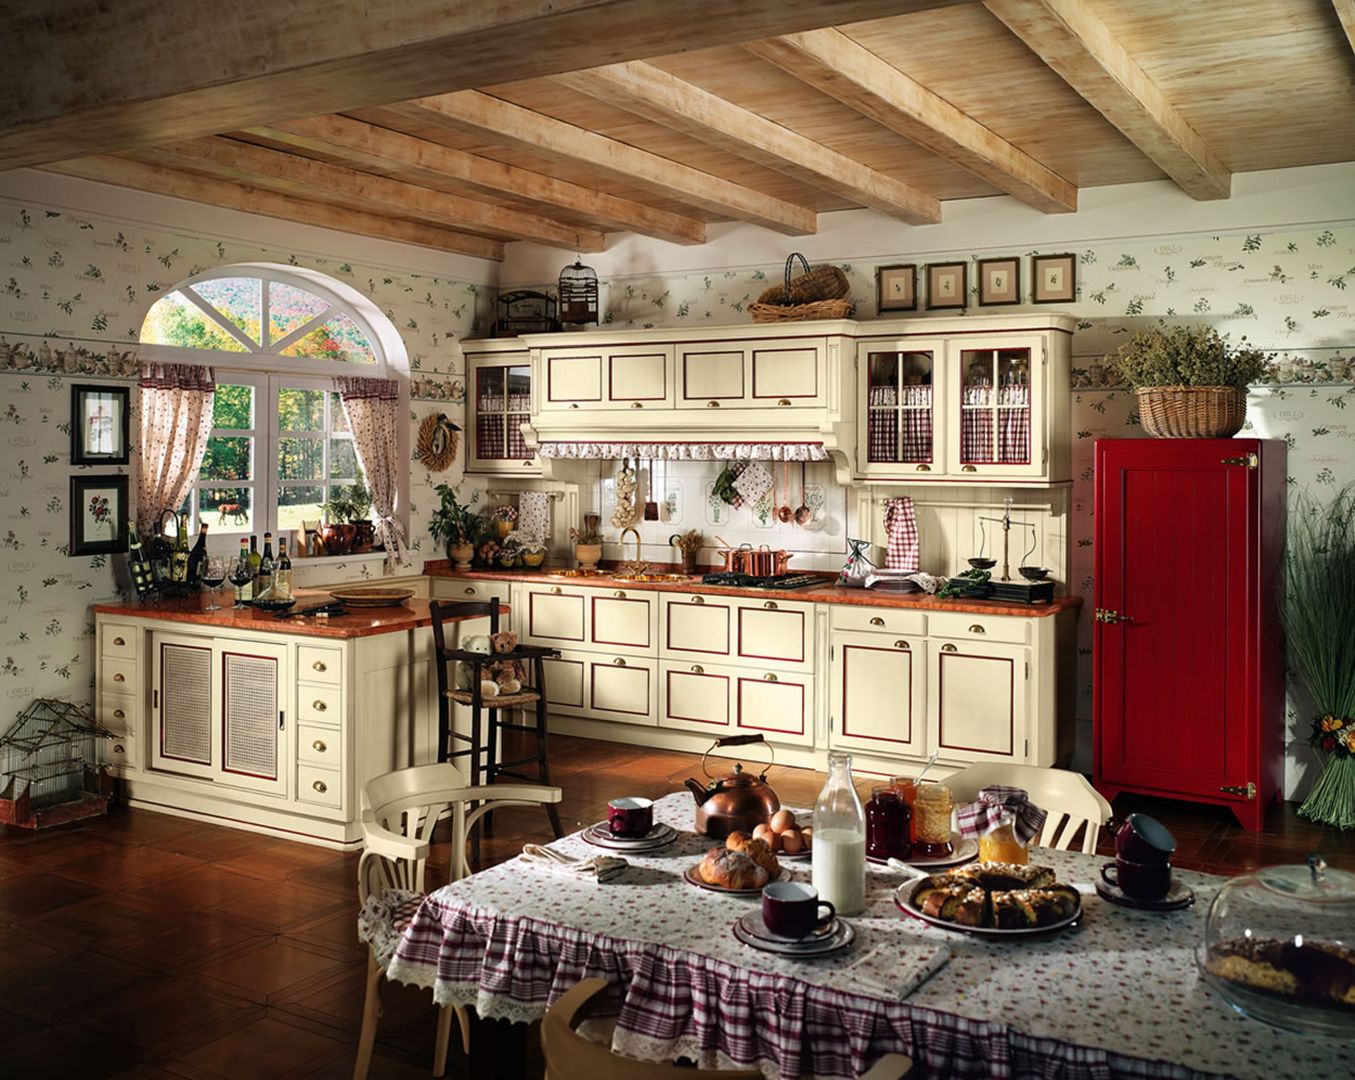 5 pomysłów na kuchnię w wiejskim stylu. Fot. Lottocento.